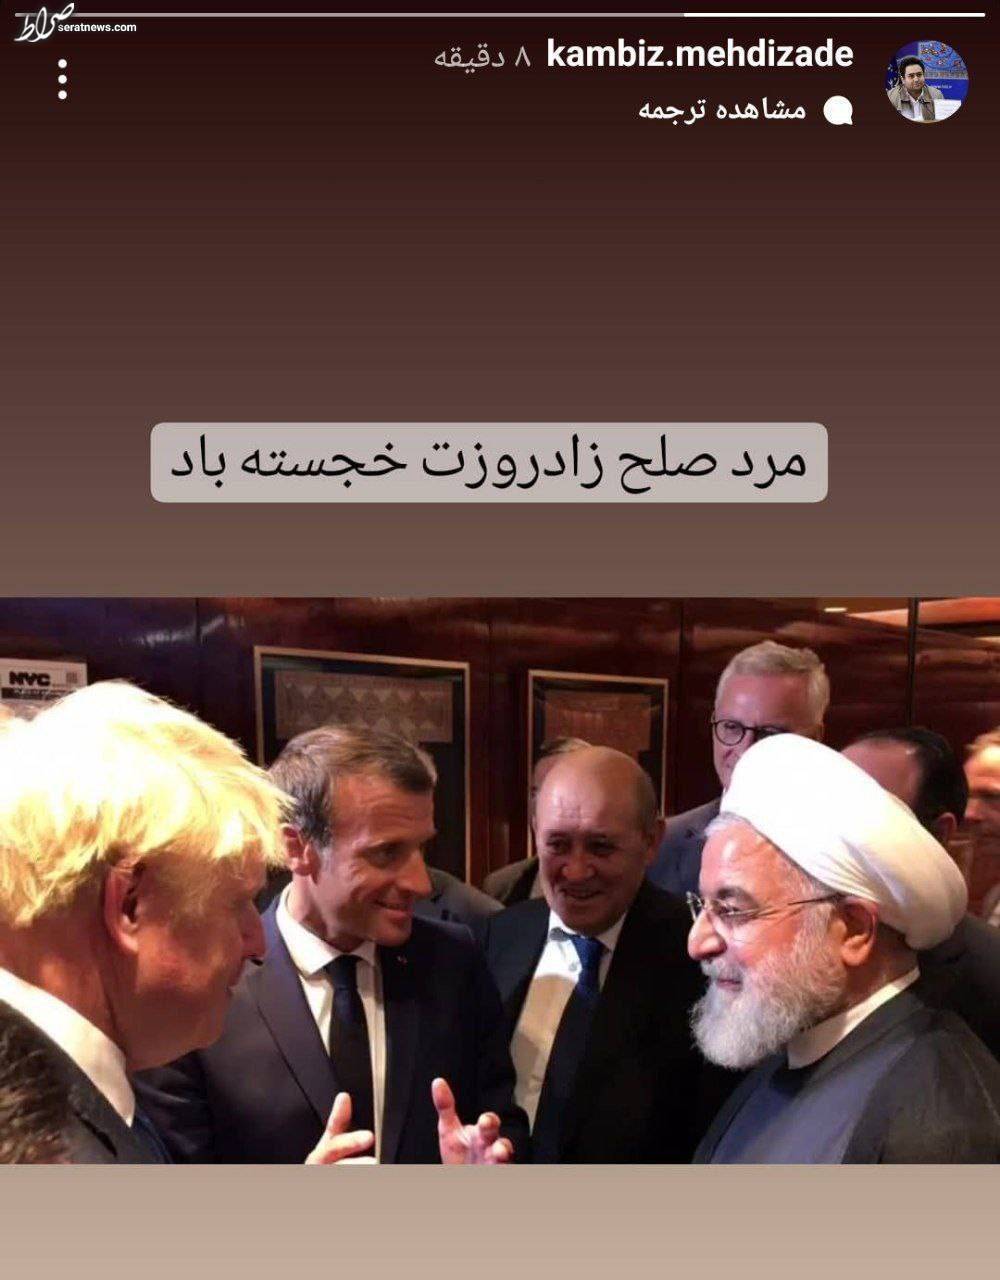 عکس/ داماد حسن روحانی تولد پدرهمسرش را تبریک گفت یا کنایه زد؟!